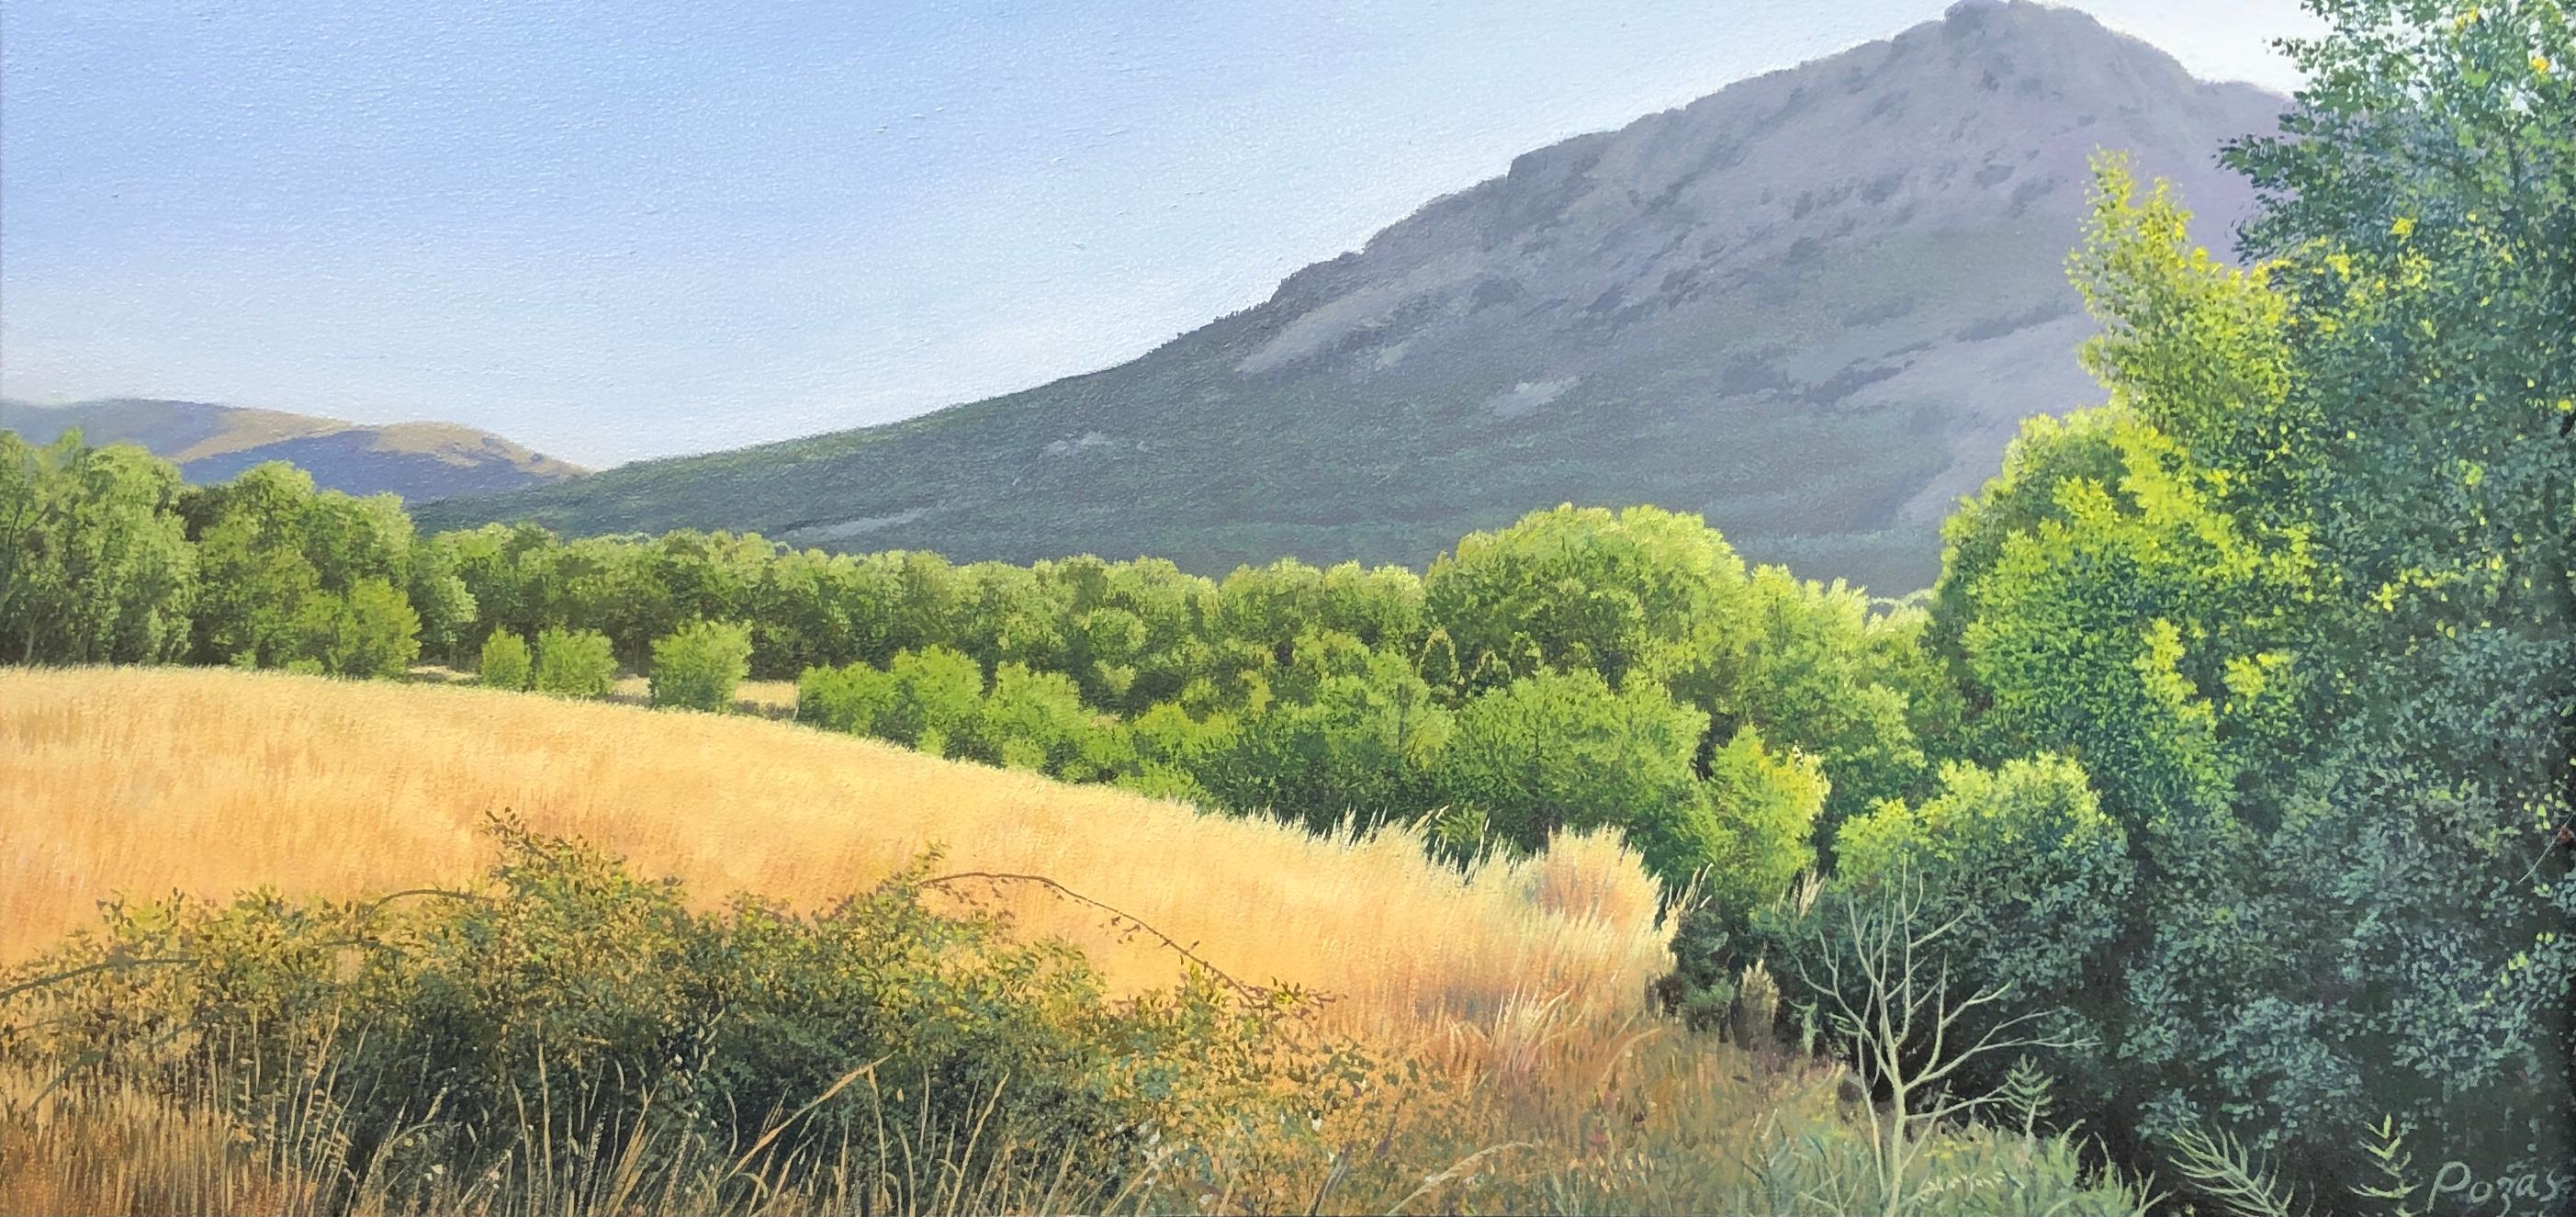 René Monzón Relova “Pozas” Landscape Painting – Eine Zeit lang, sehr detaillierte üppige Landschaft mit goldenem Feld und Berg, gerahmt